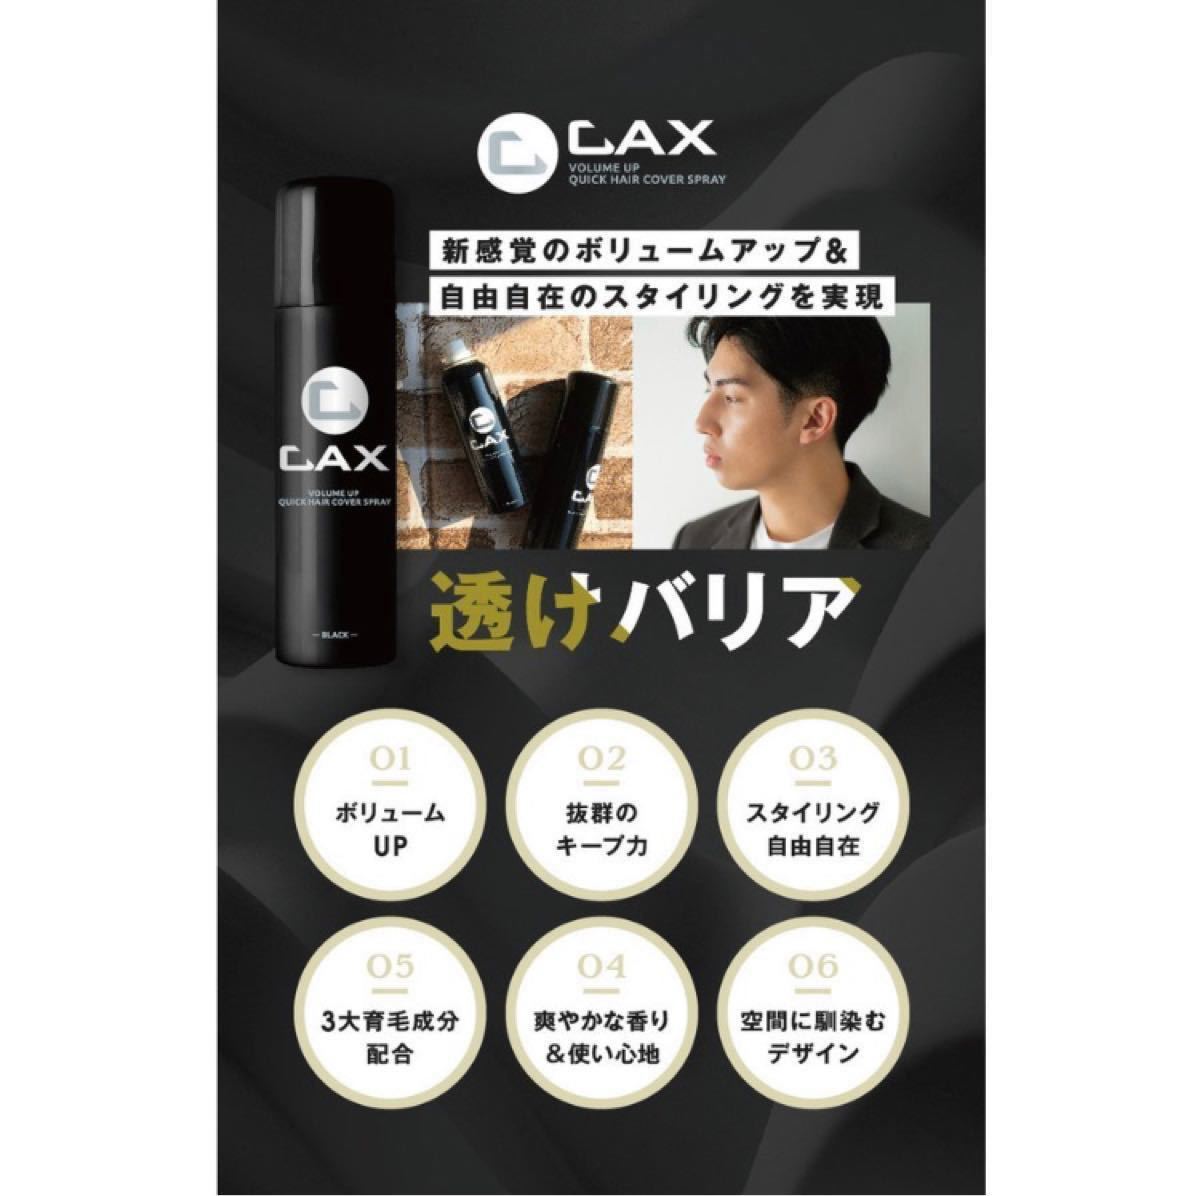 【新品未開封】 CAX（カックス）クイックヘアカバースプレー 3本セット